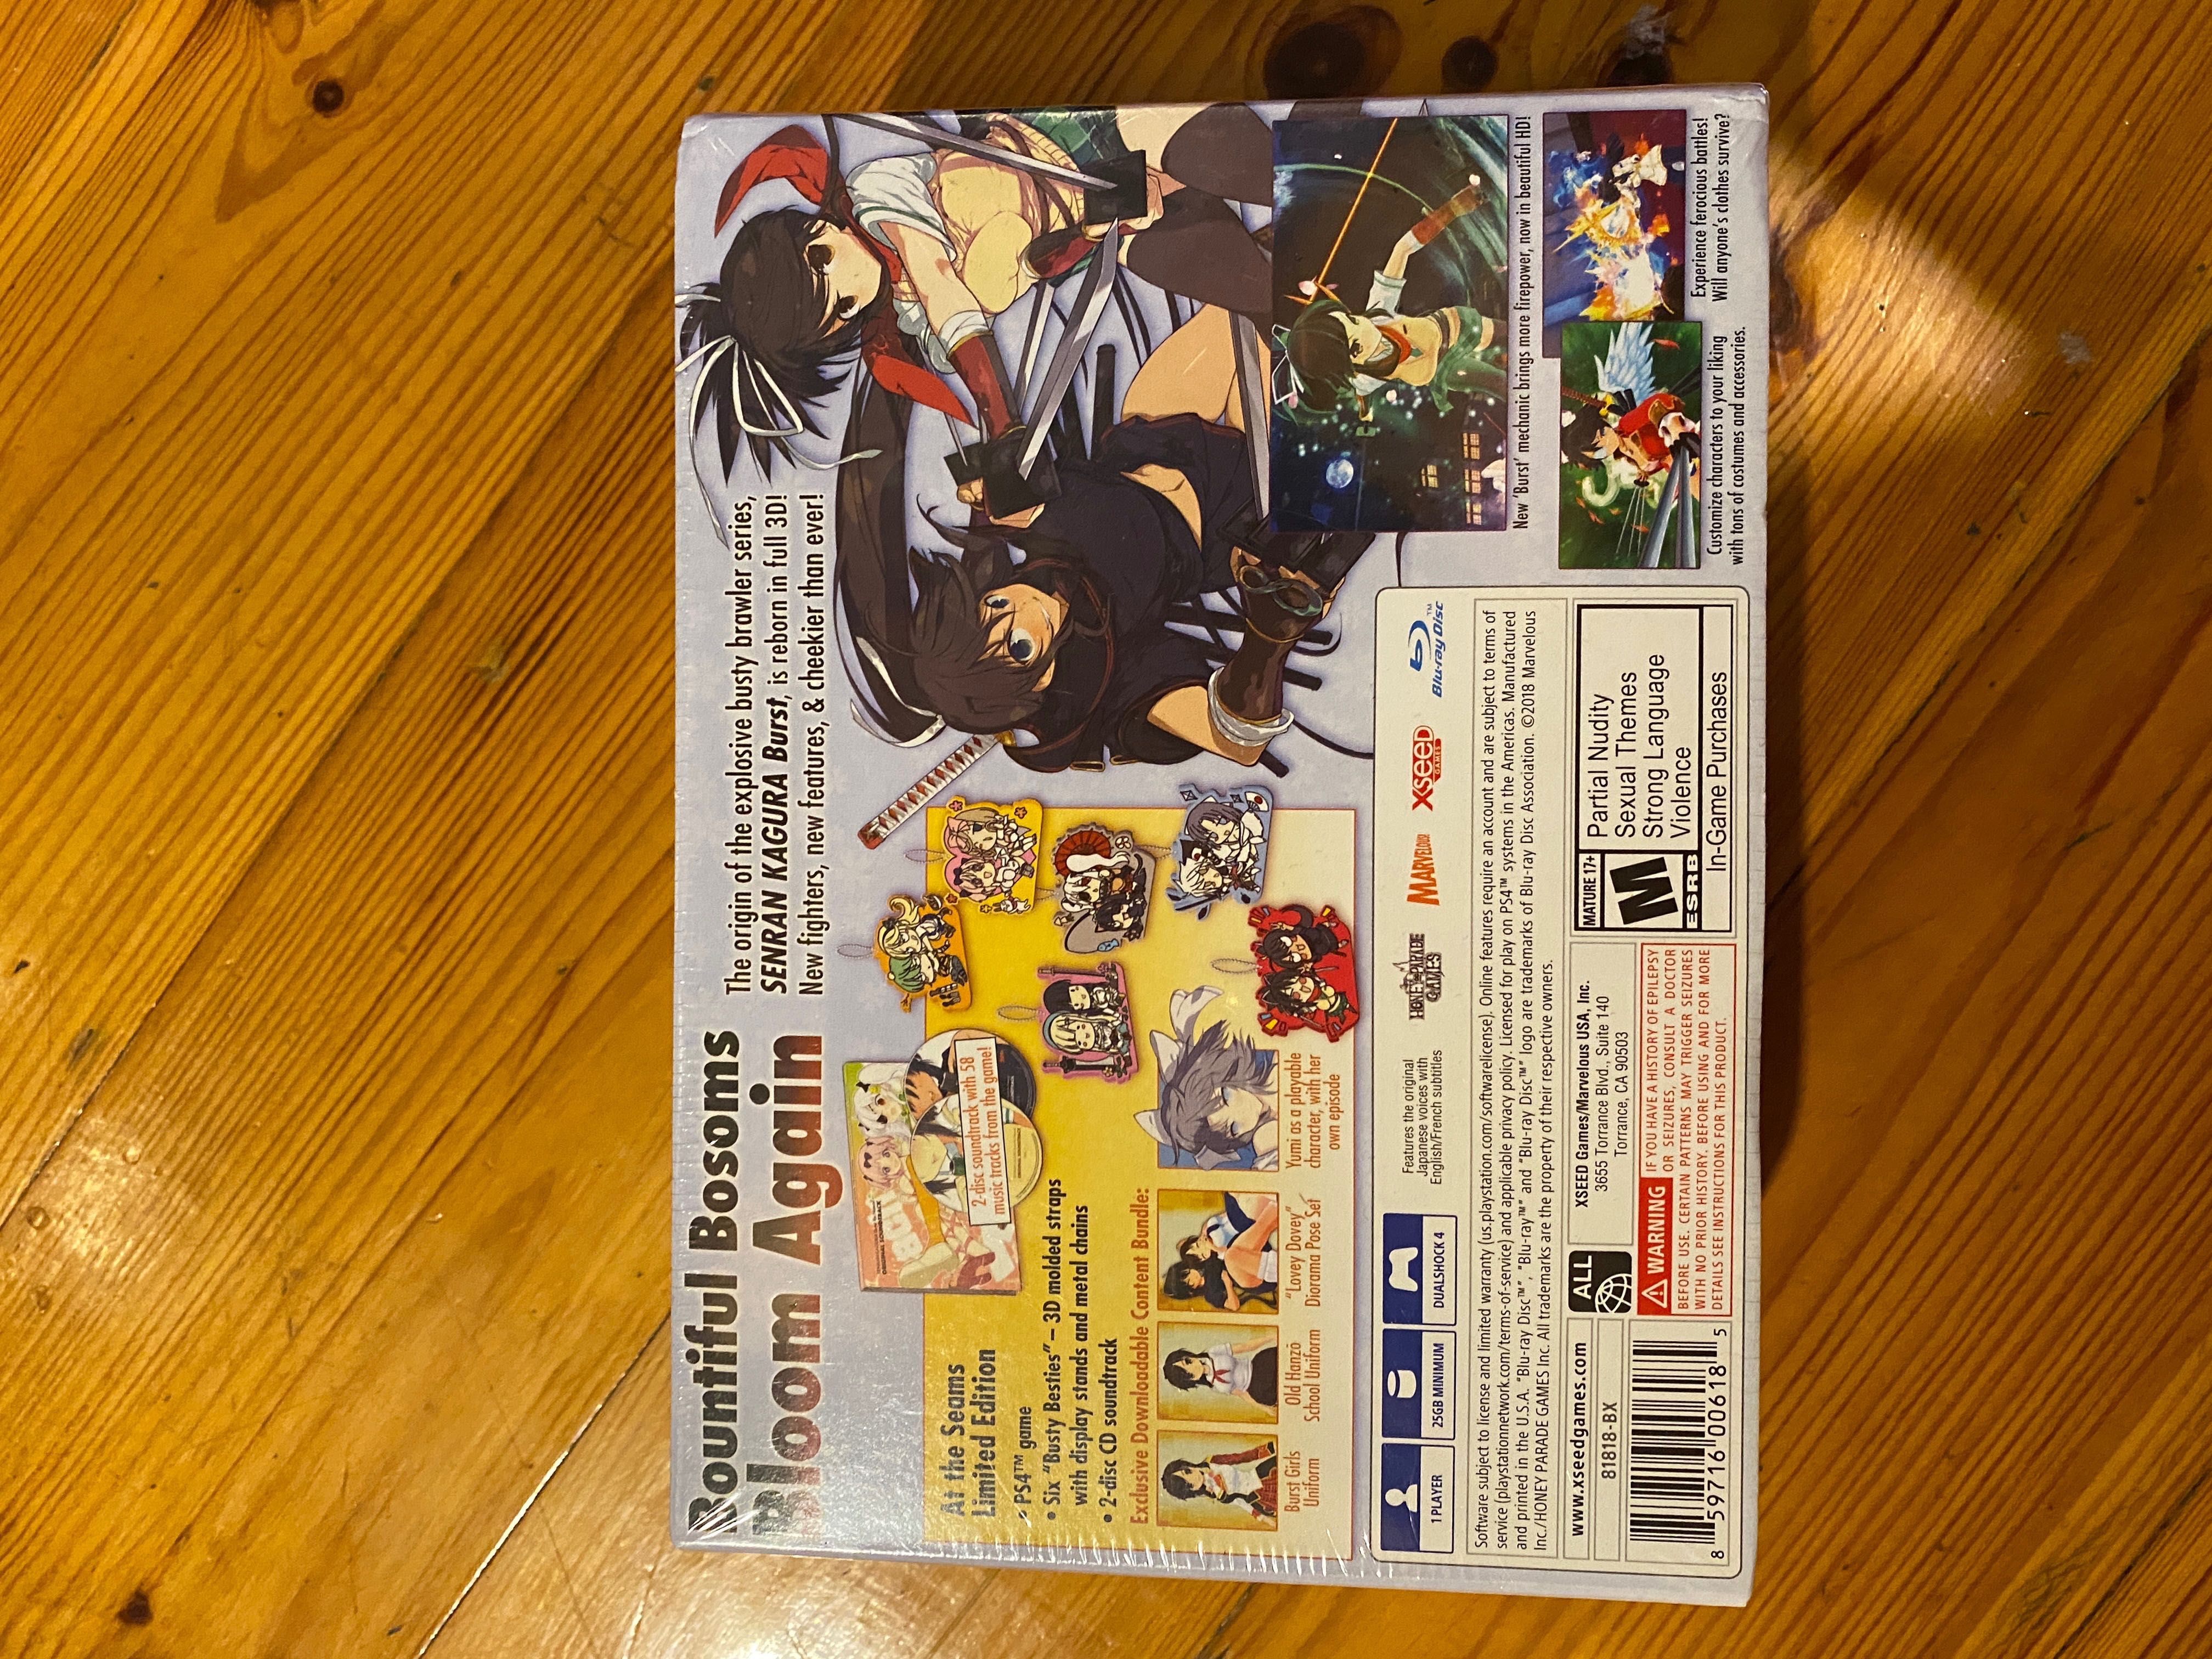 Playstation 4 Senran Kagura Burst Re:newal! Limited Edition